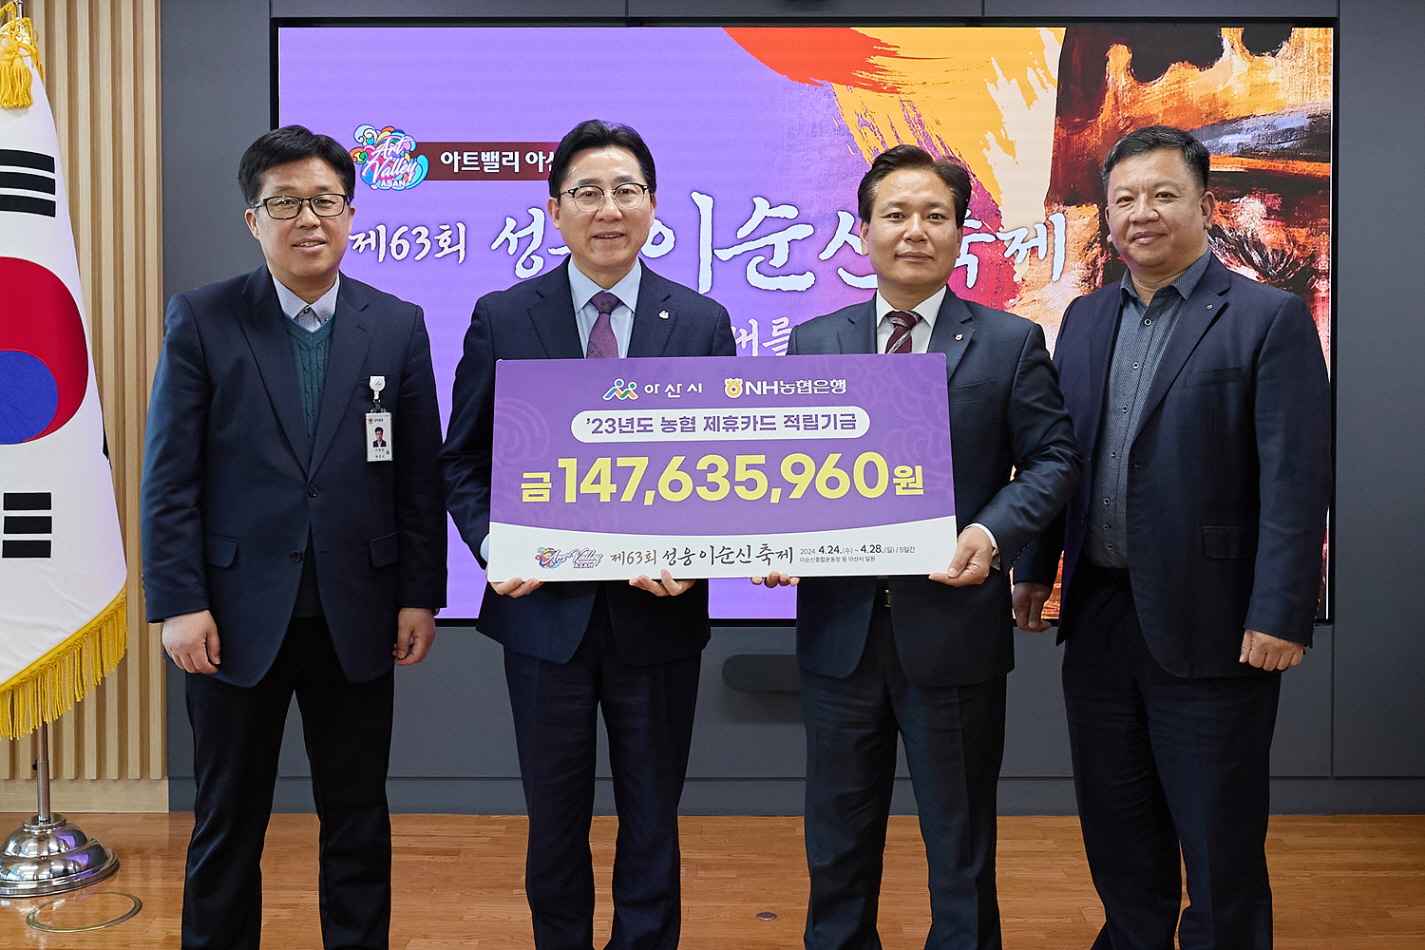 아산시, NH농협 아산시지부로부터 제휴카드 기금 1억 4,763만 원 전달받아 관련사진